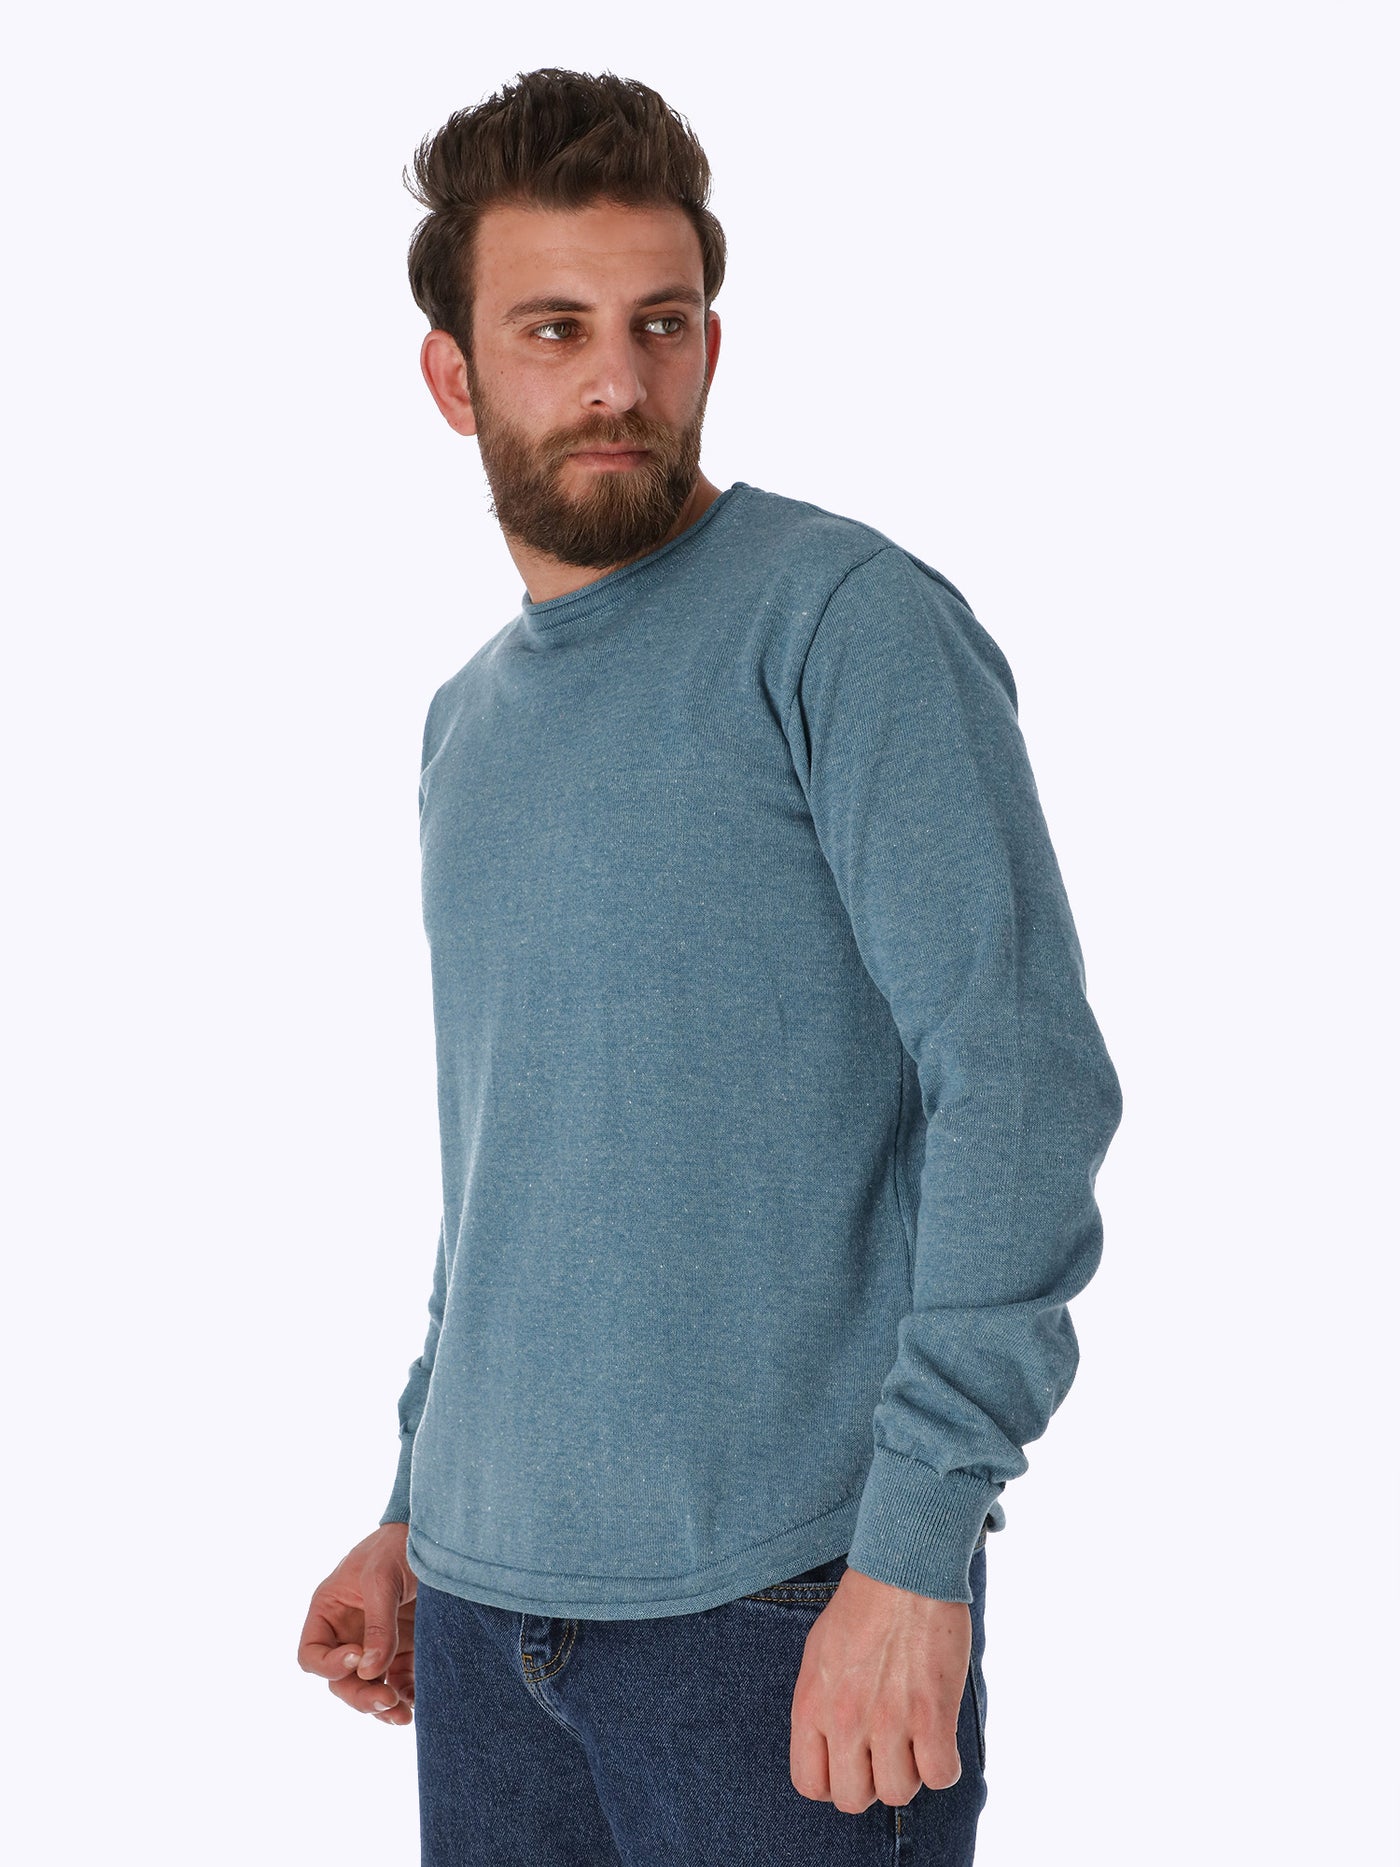 Sweater - Crew Neck